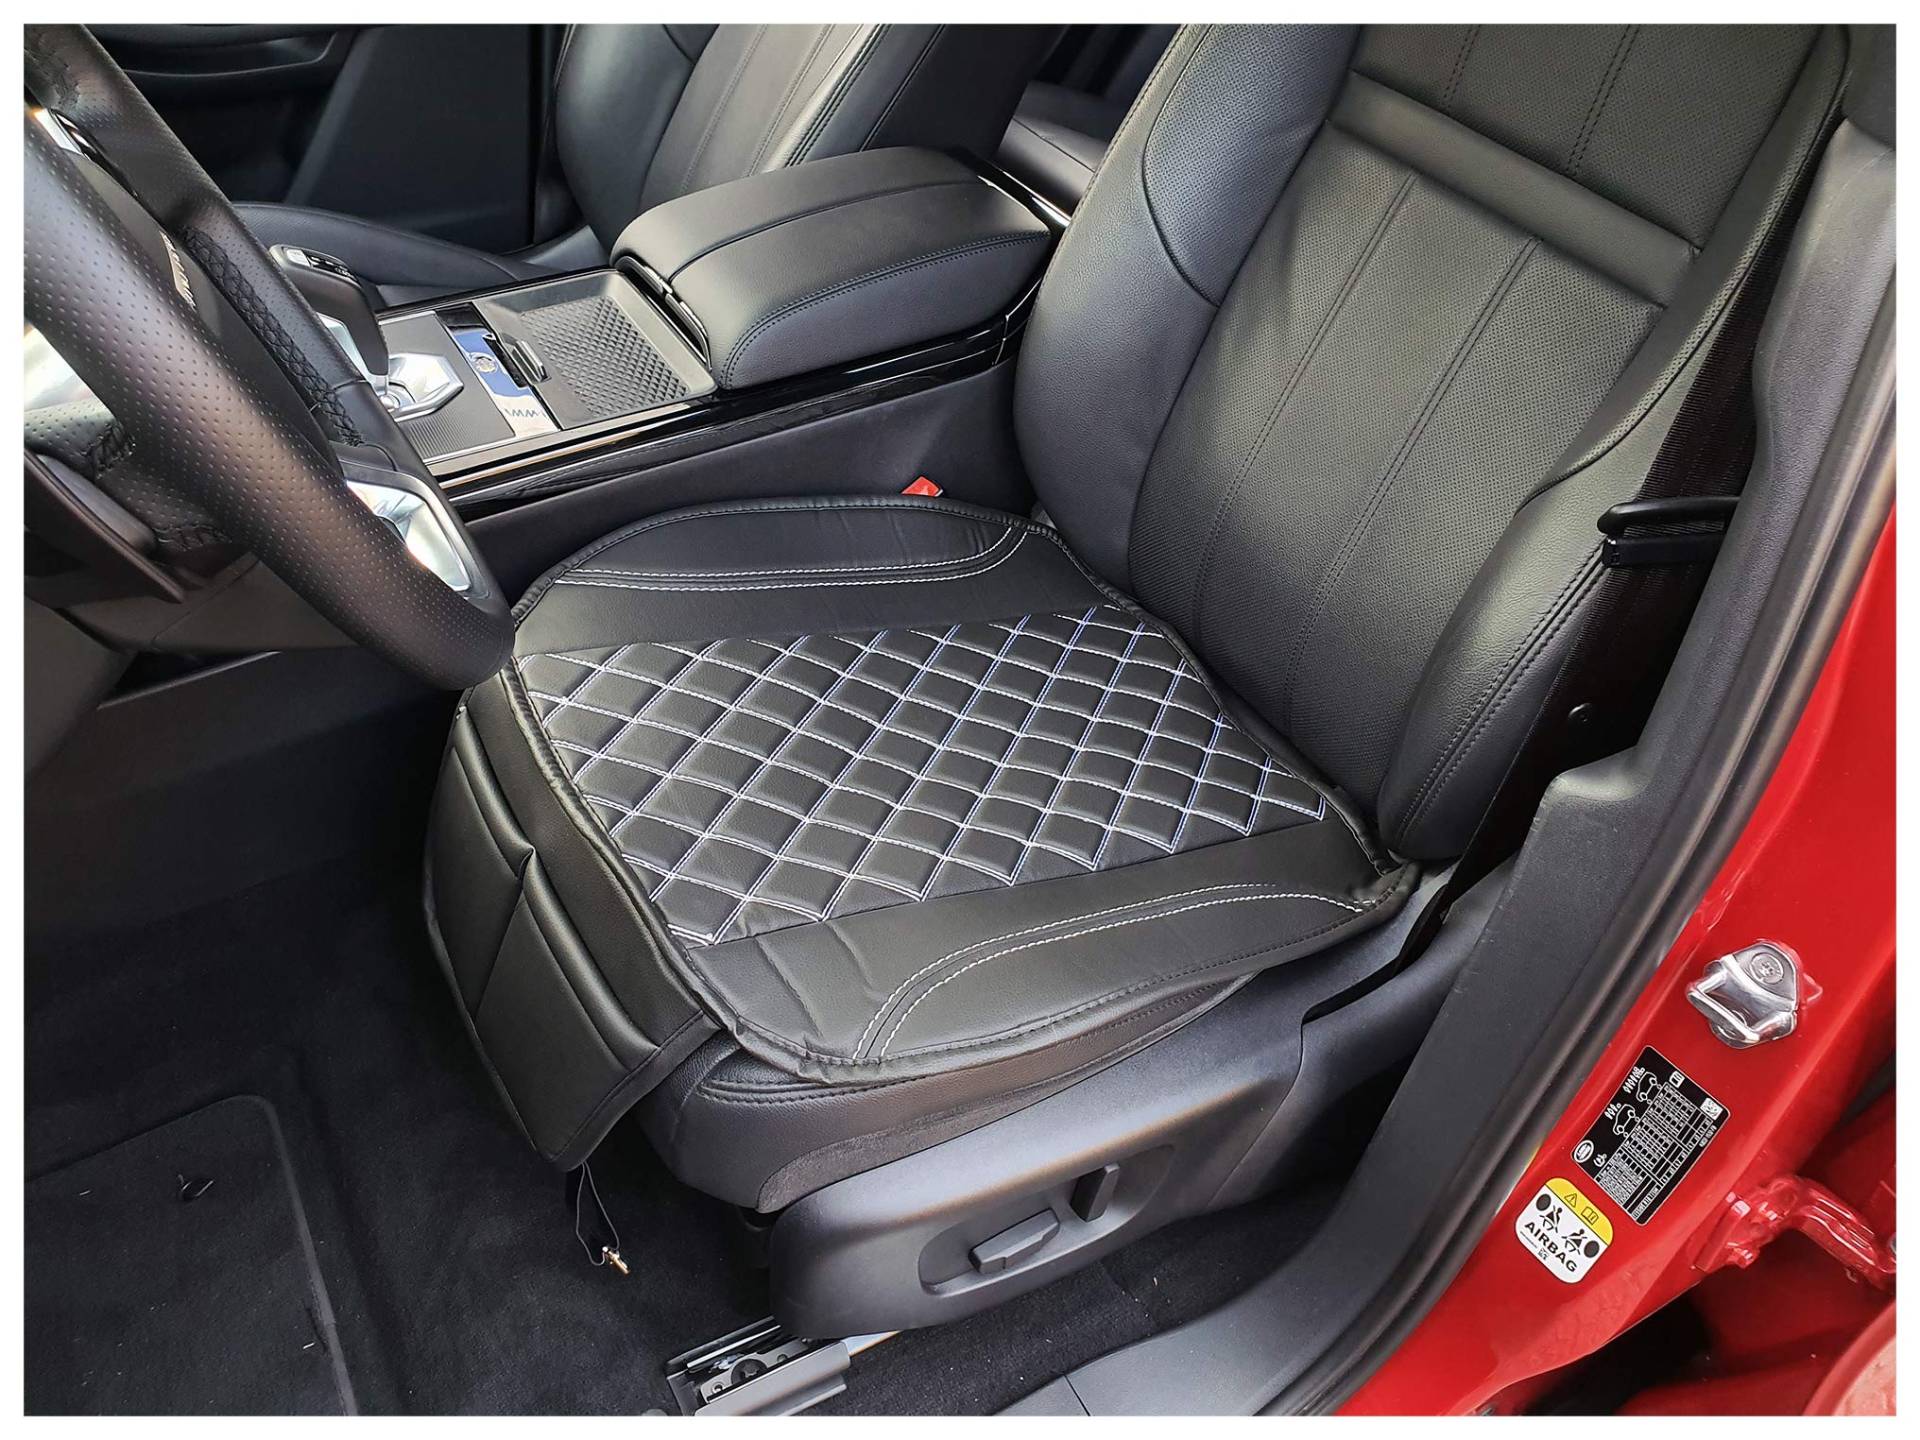 BREMER SITZBEZÜGE Sitzauflage Kunstleder Textilleder kompatibel mit Mazda CX-7 Sitzkissen in Kunstleder Schwarz/Weiߟe Naht OT408 von BREMER SITZBEZÜGE